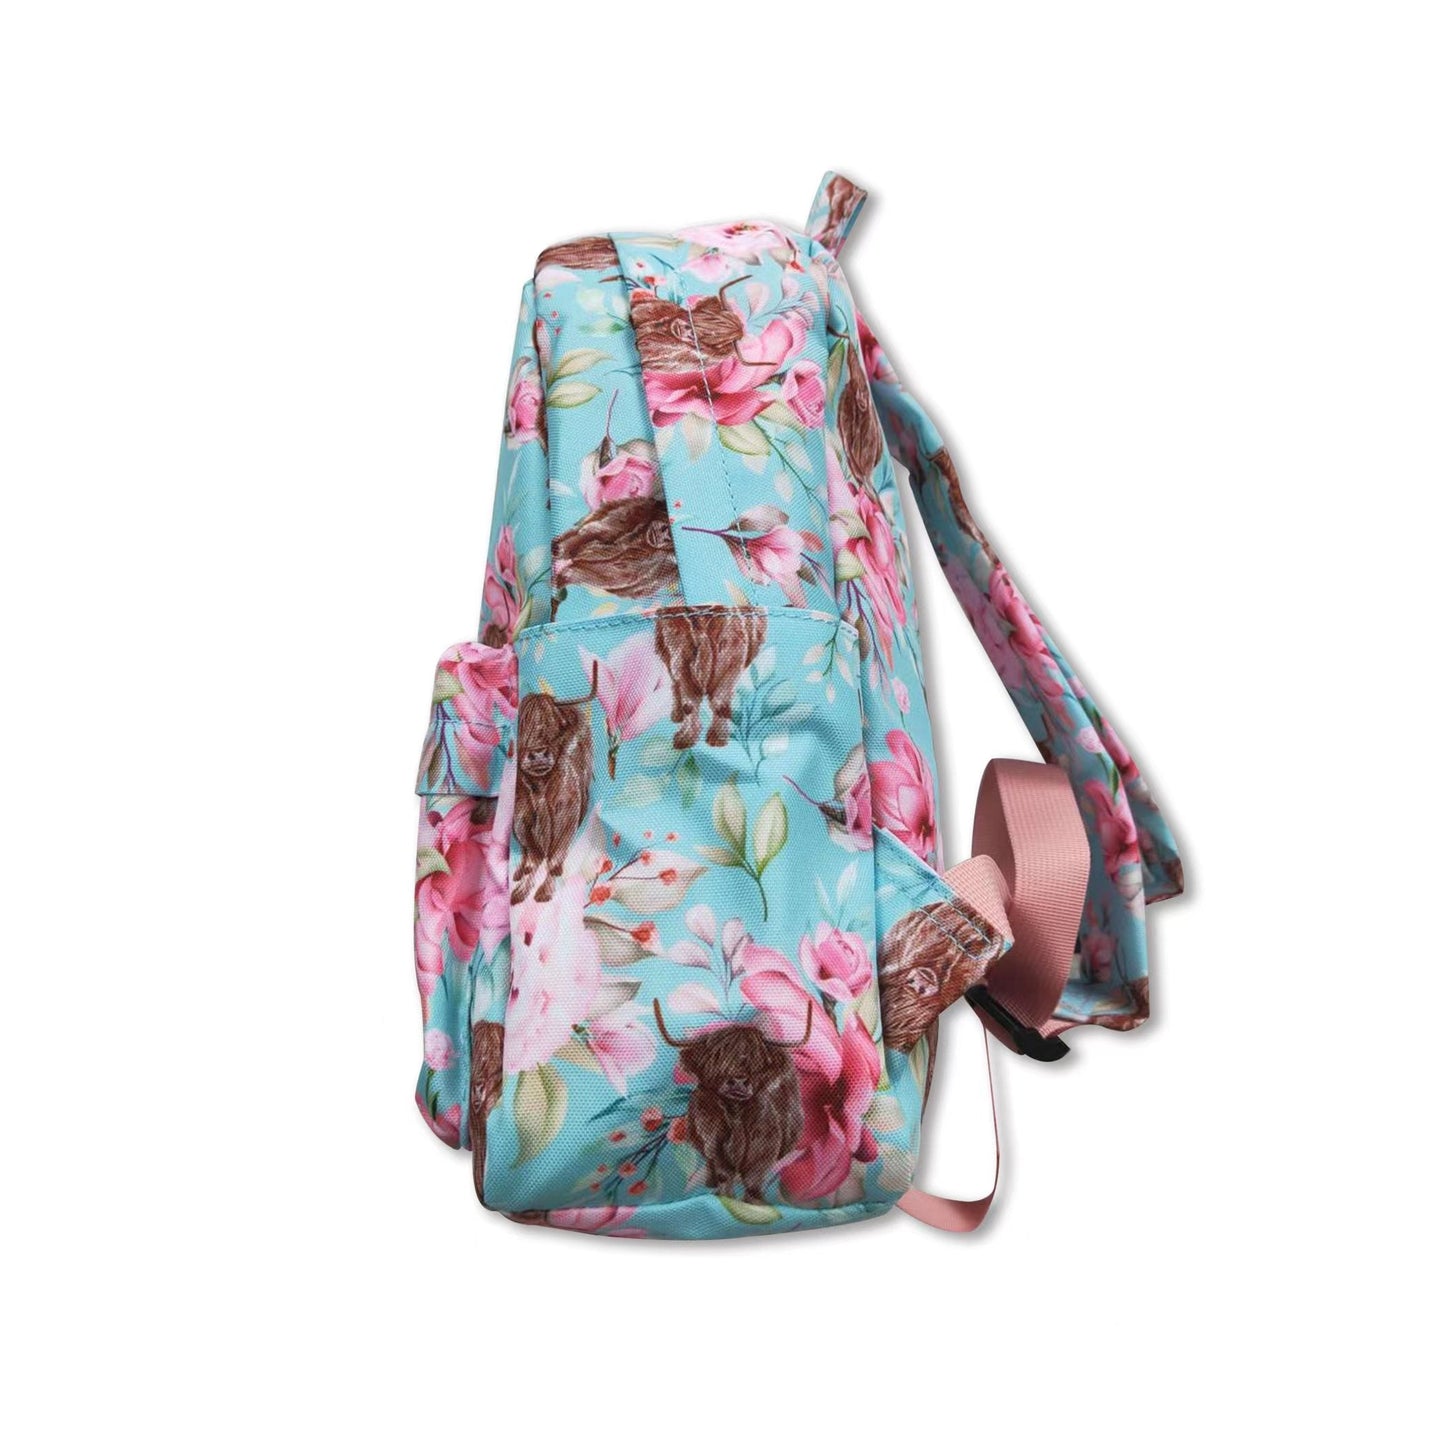 Light blue floral highland cow kids girls backpack